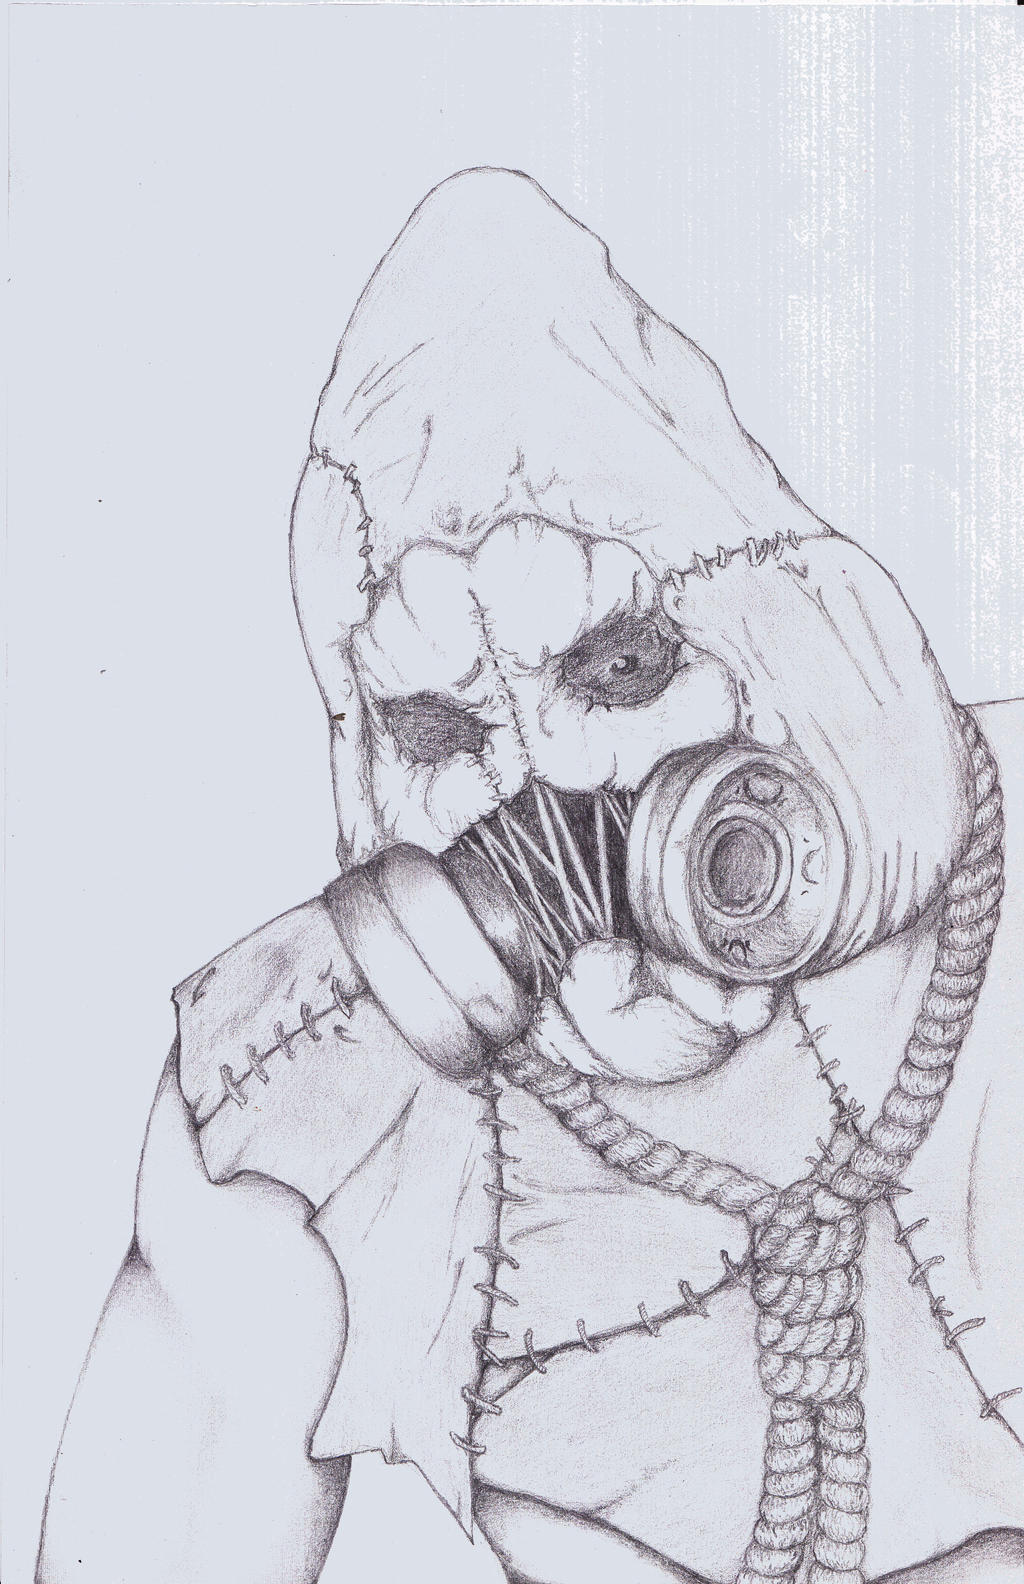 Arkham Asylum - Scarecrow